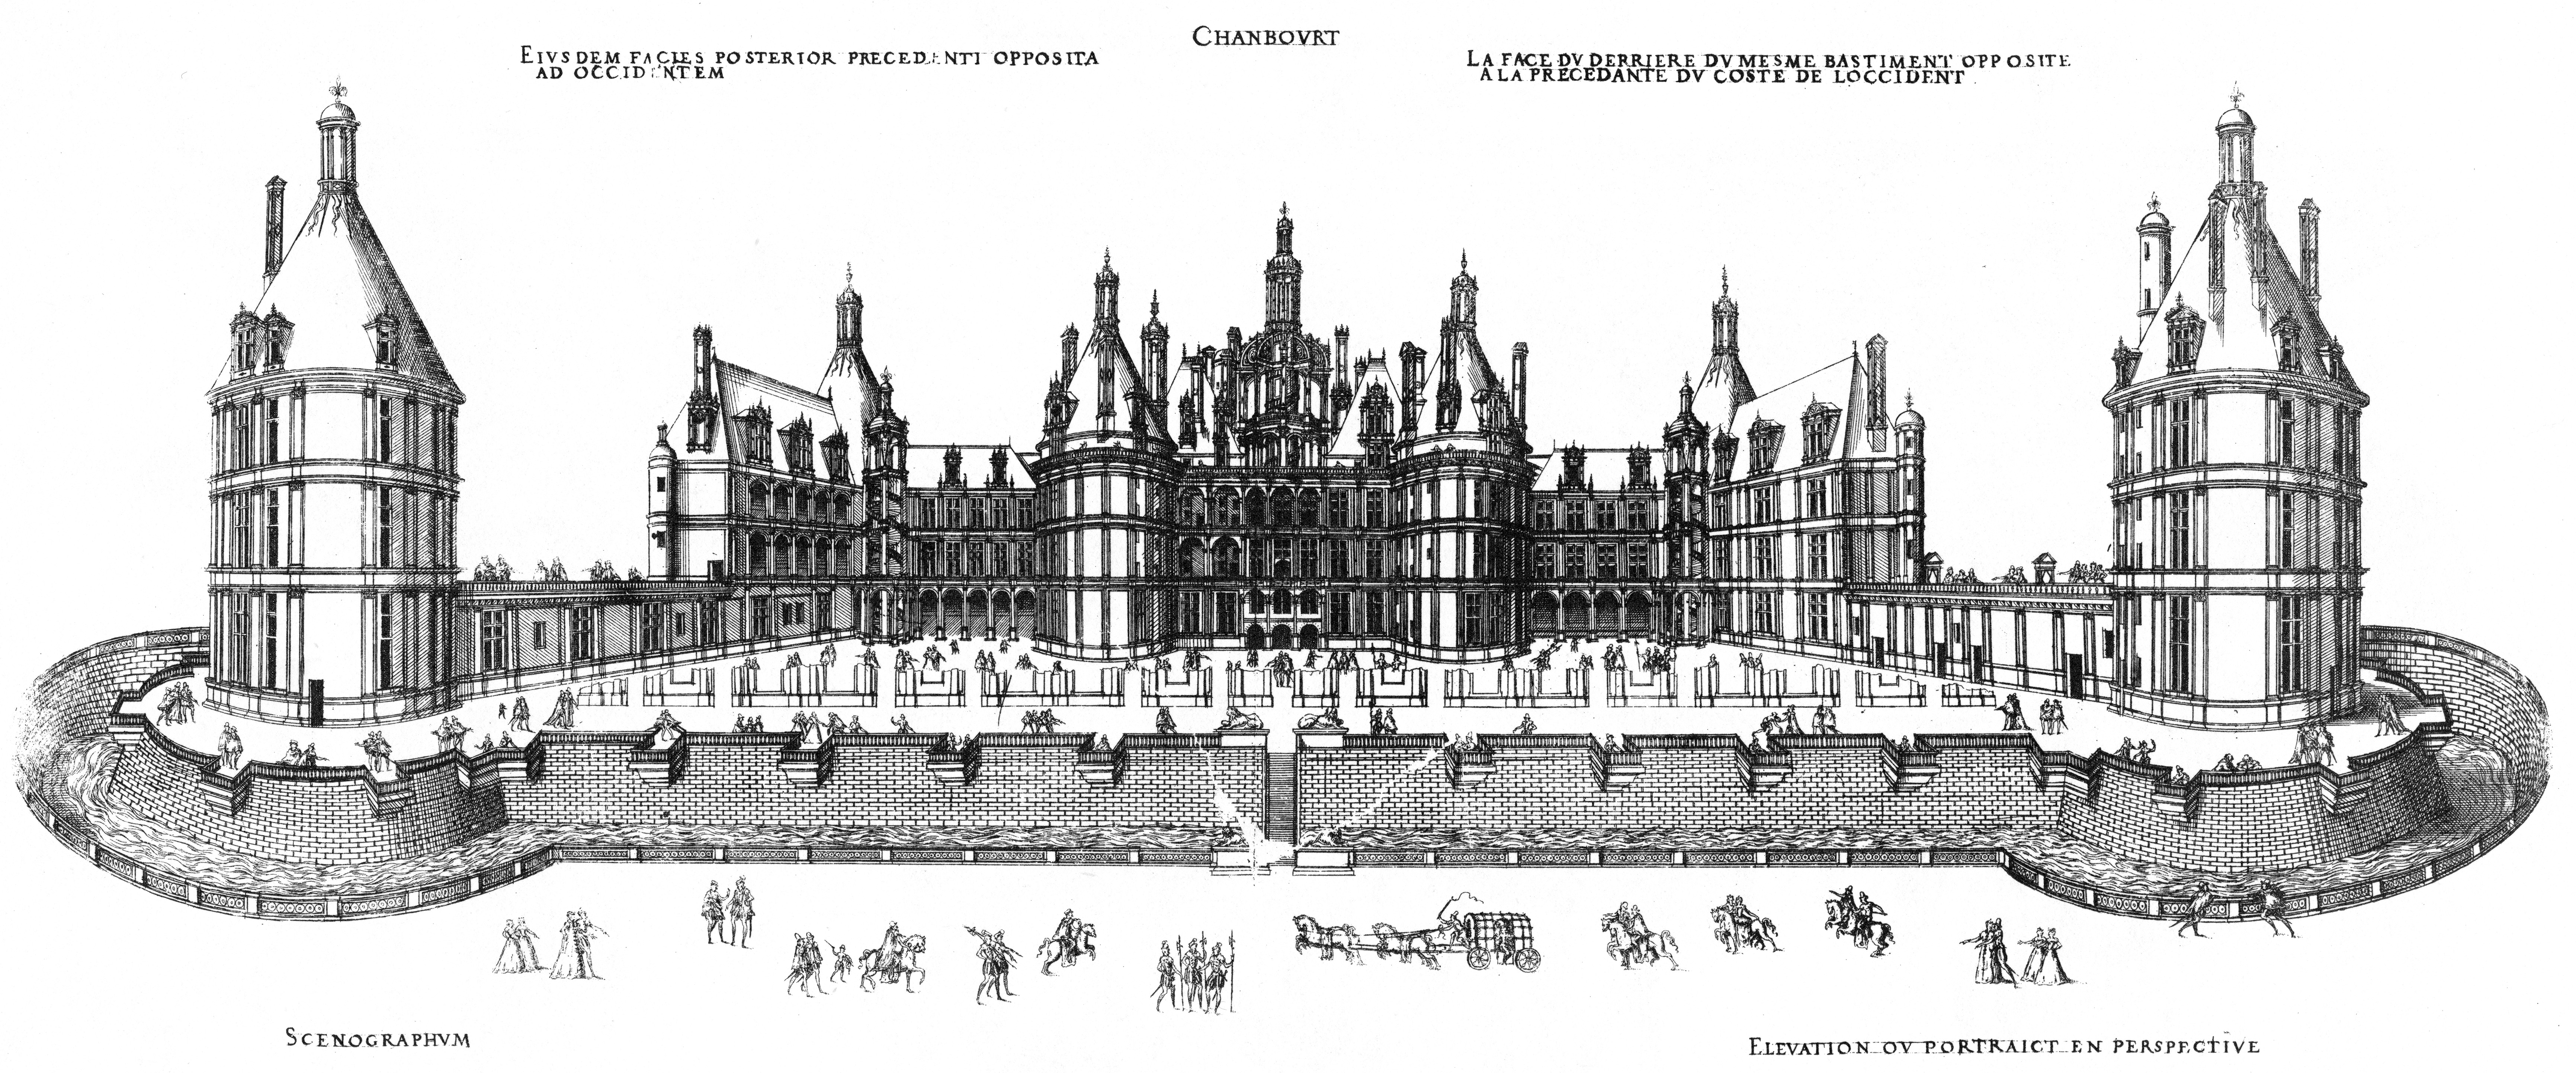 La construction du château de Chambord